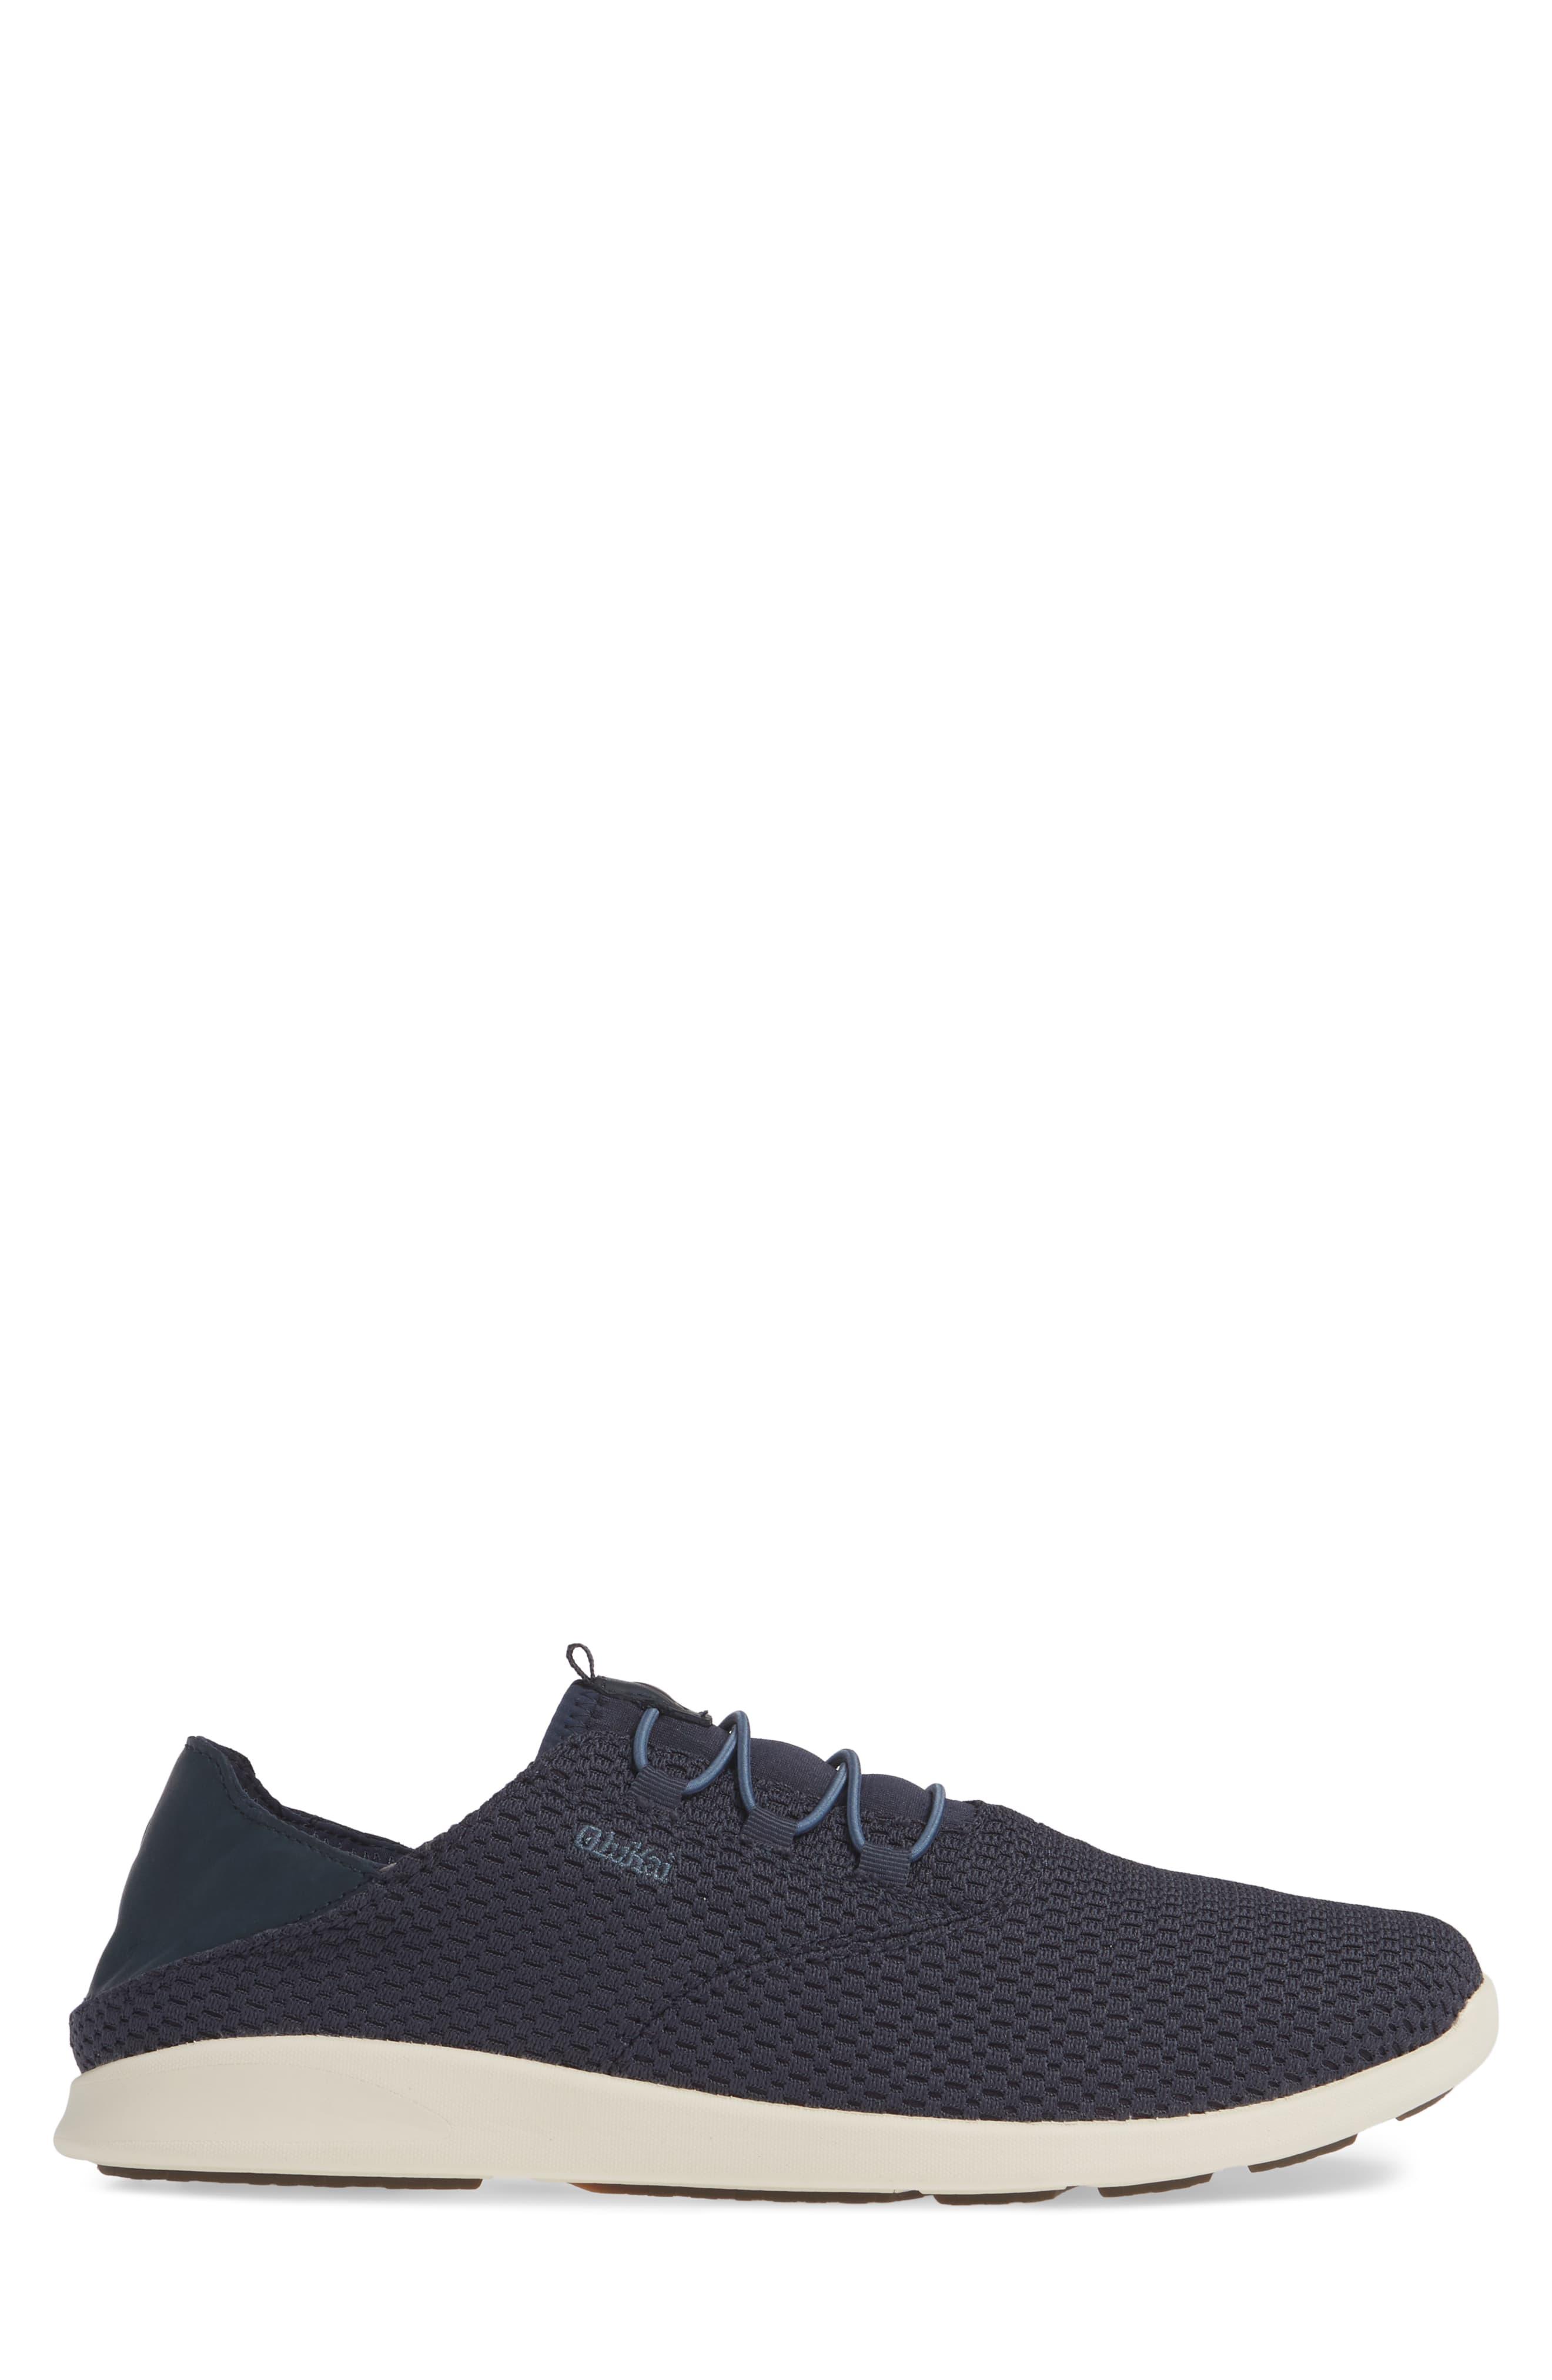 Olukai Leather Alapa Li Sneaker in Blue for Men - Lyst